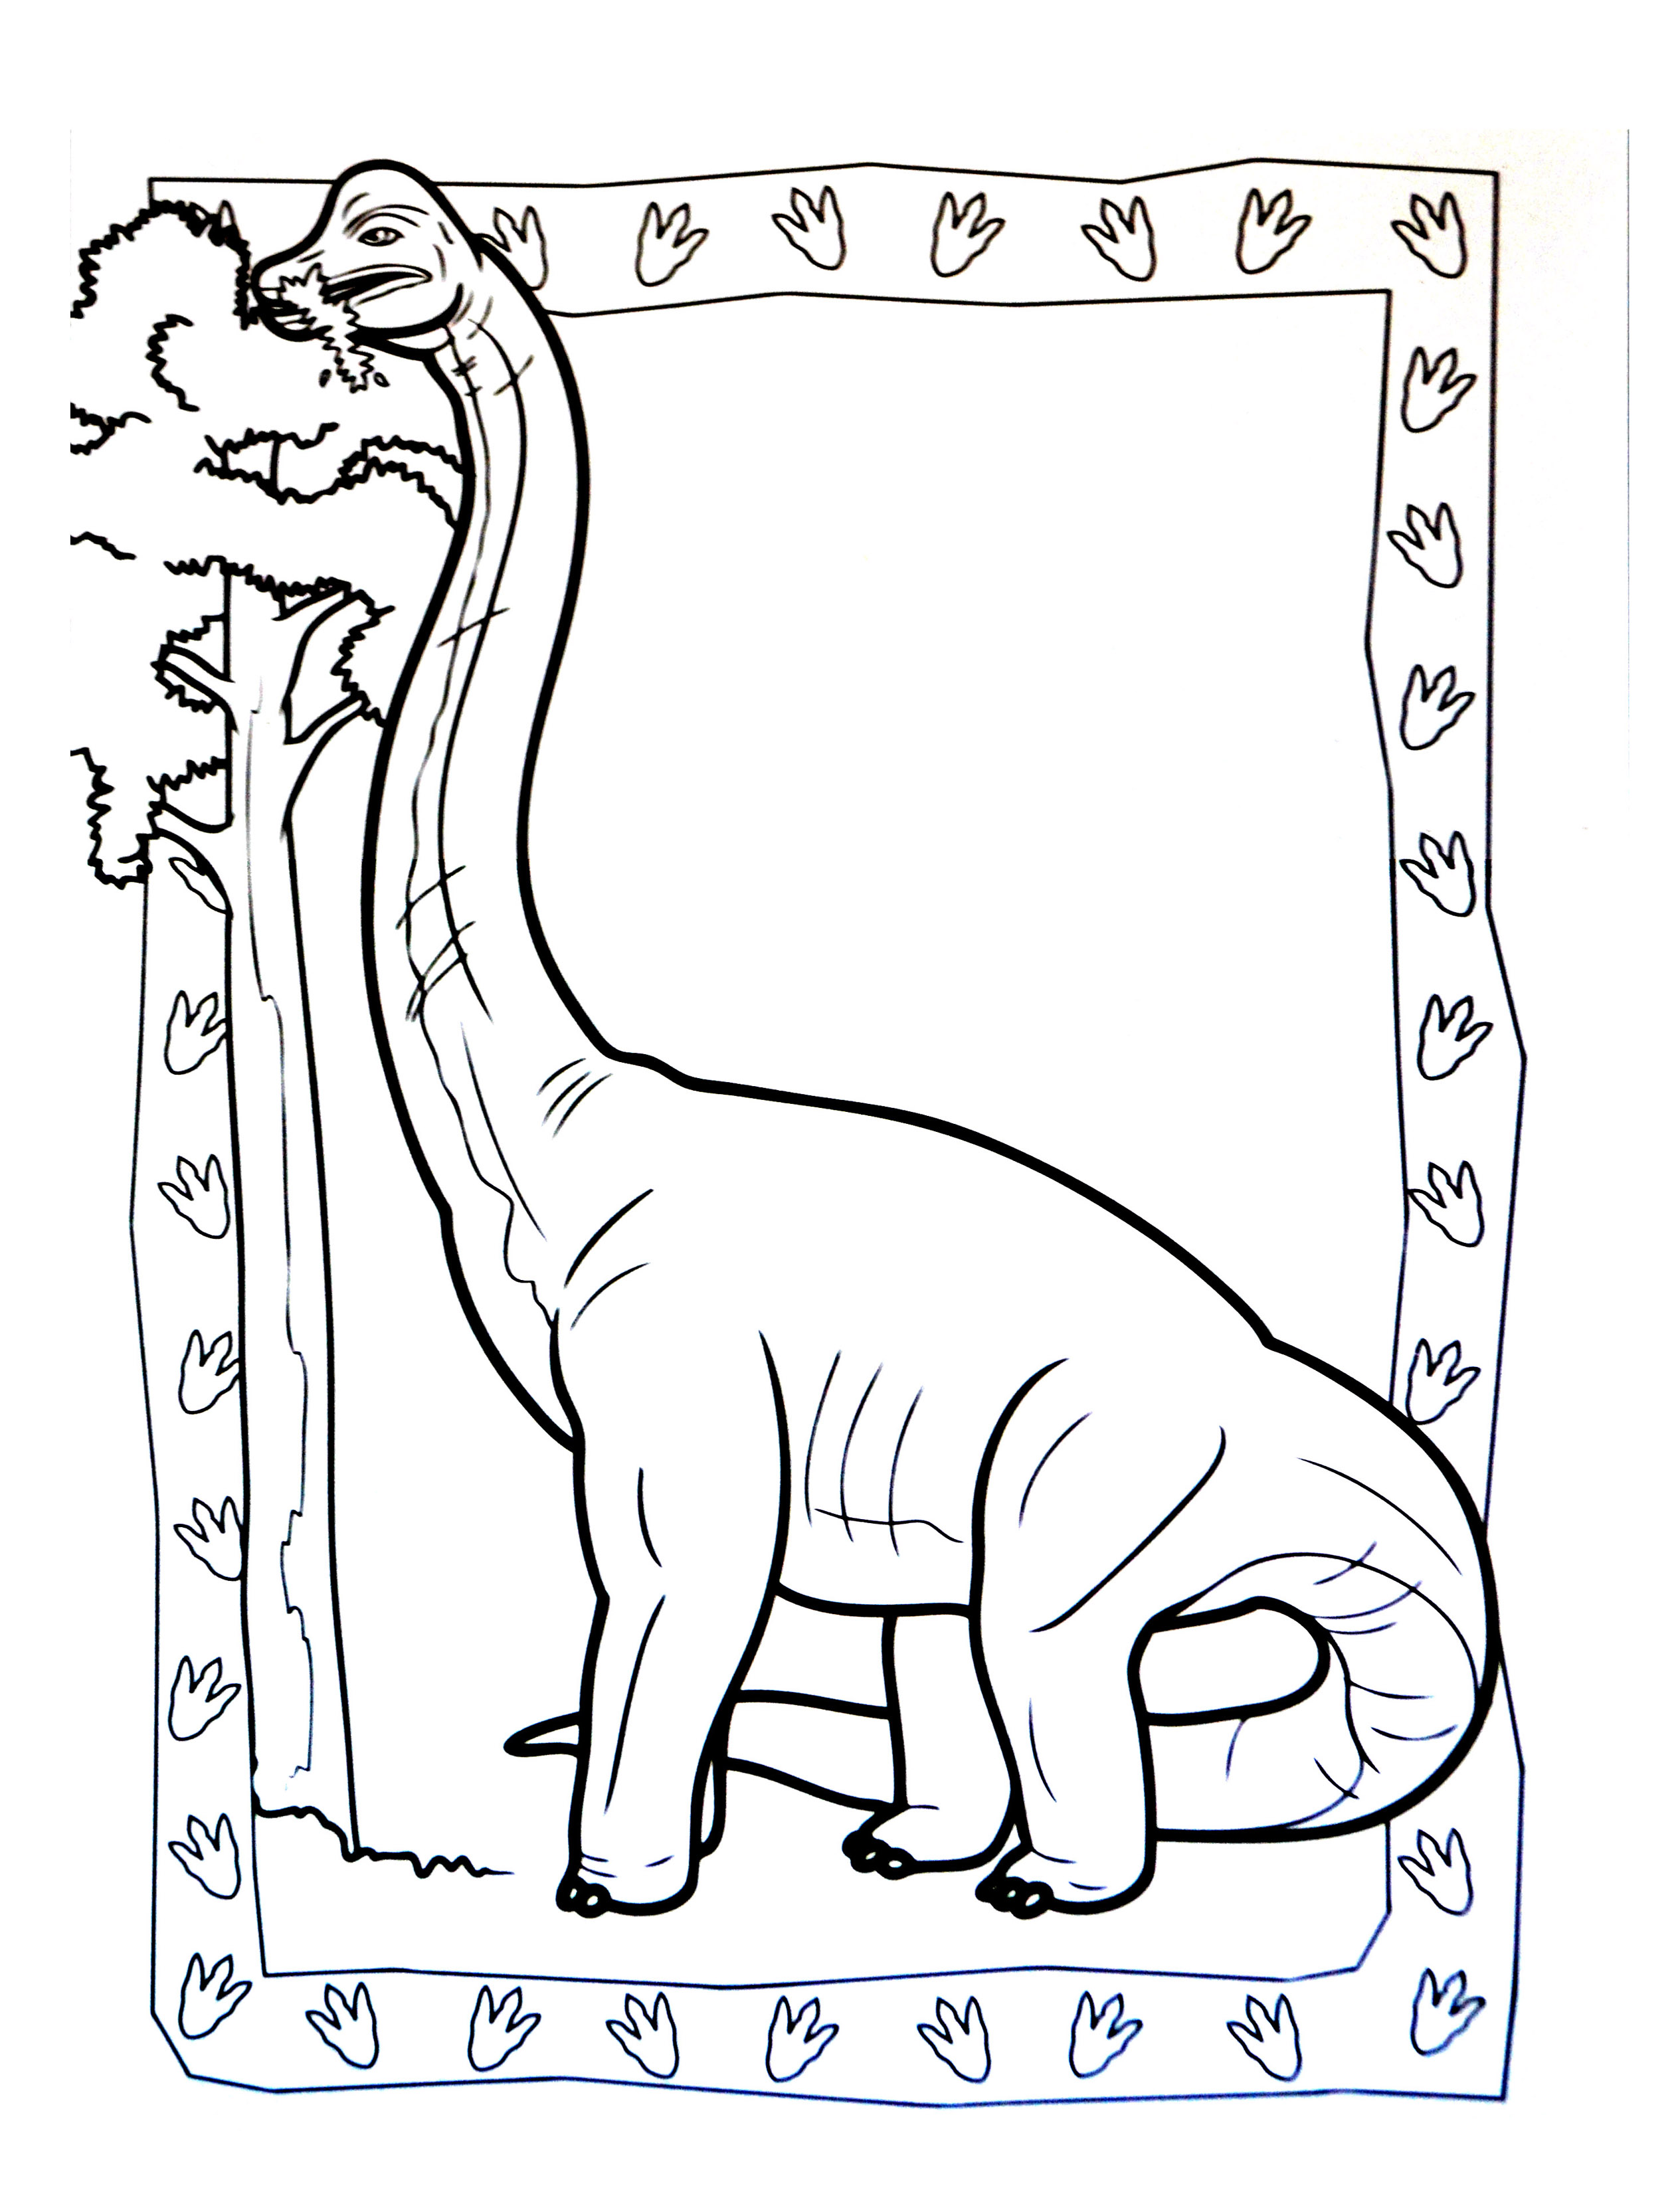 Simple Dibujos para colorear de Dinosaurios para imprimir y colorear -  Dinosaurios - Just Color Niños : Dibujos para colorear para niños